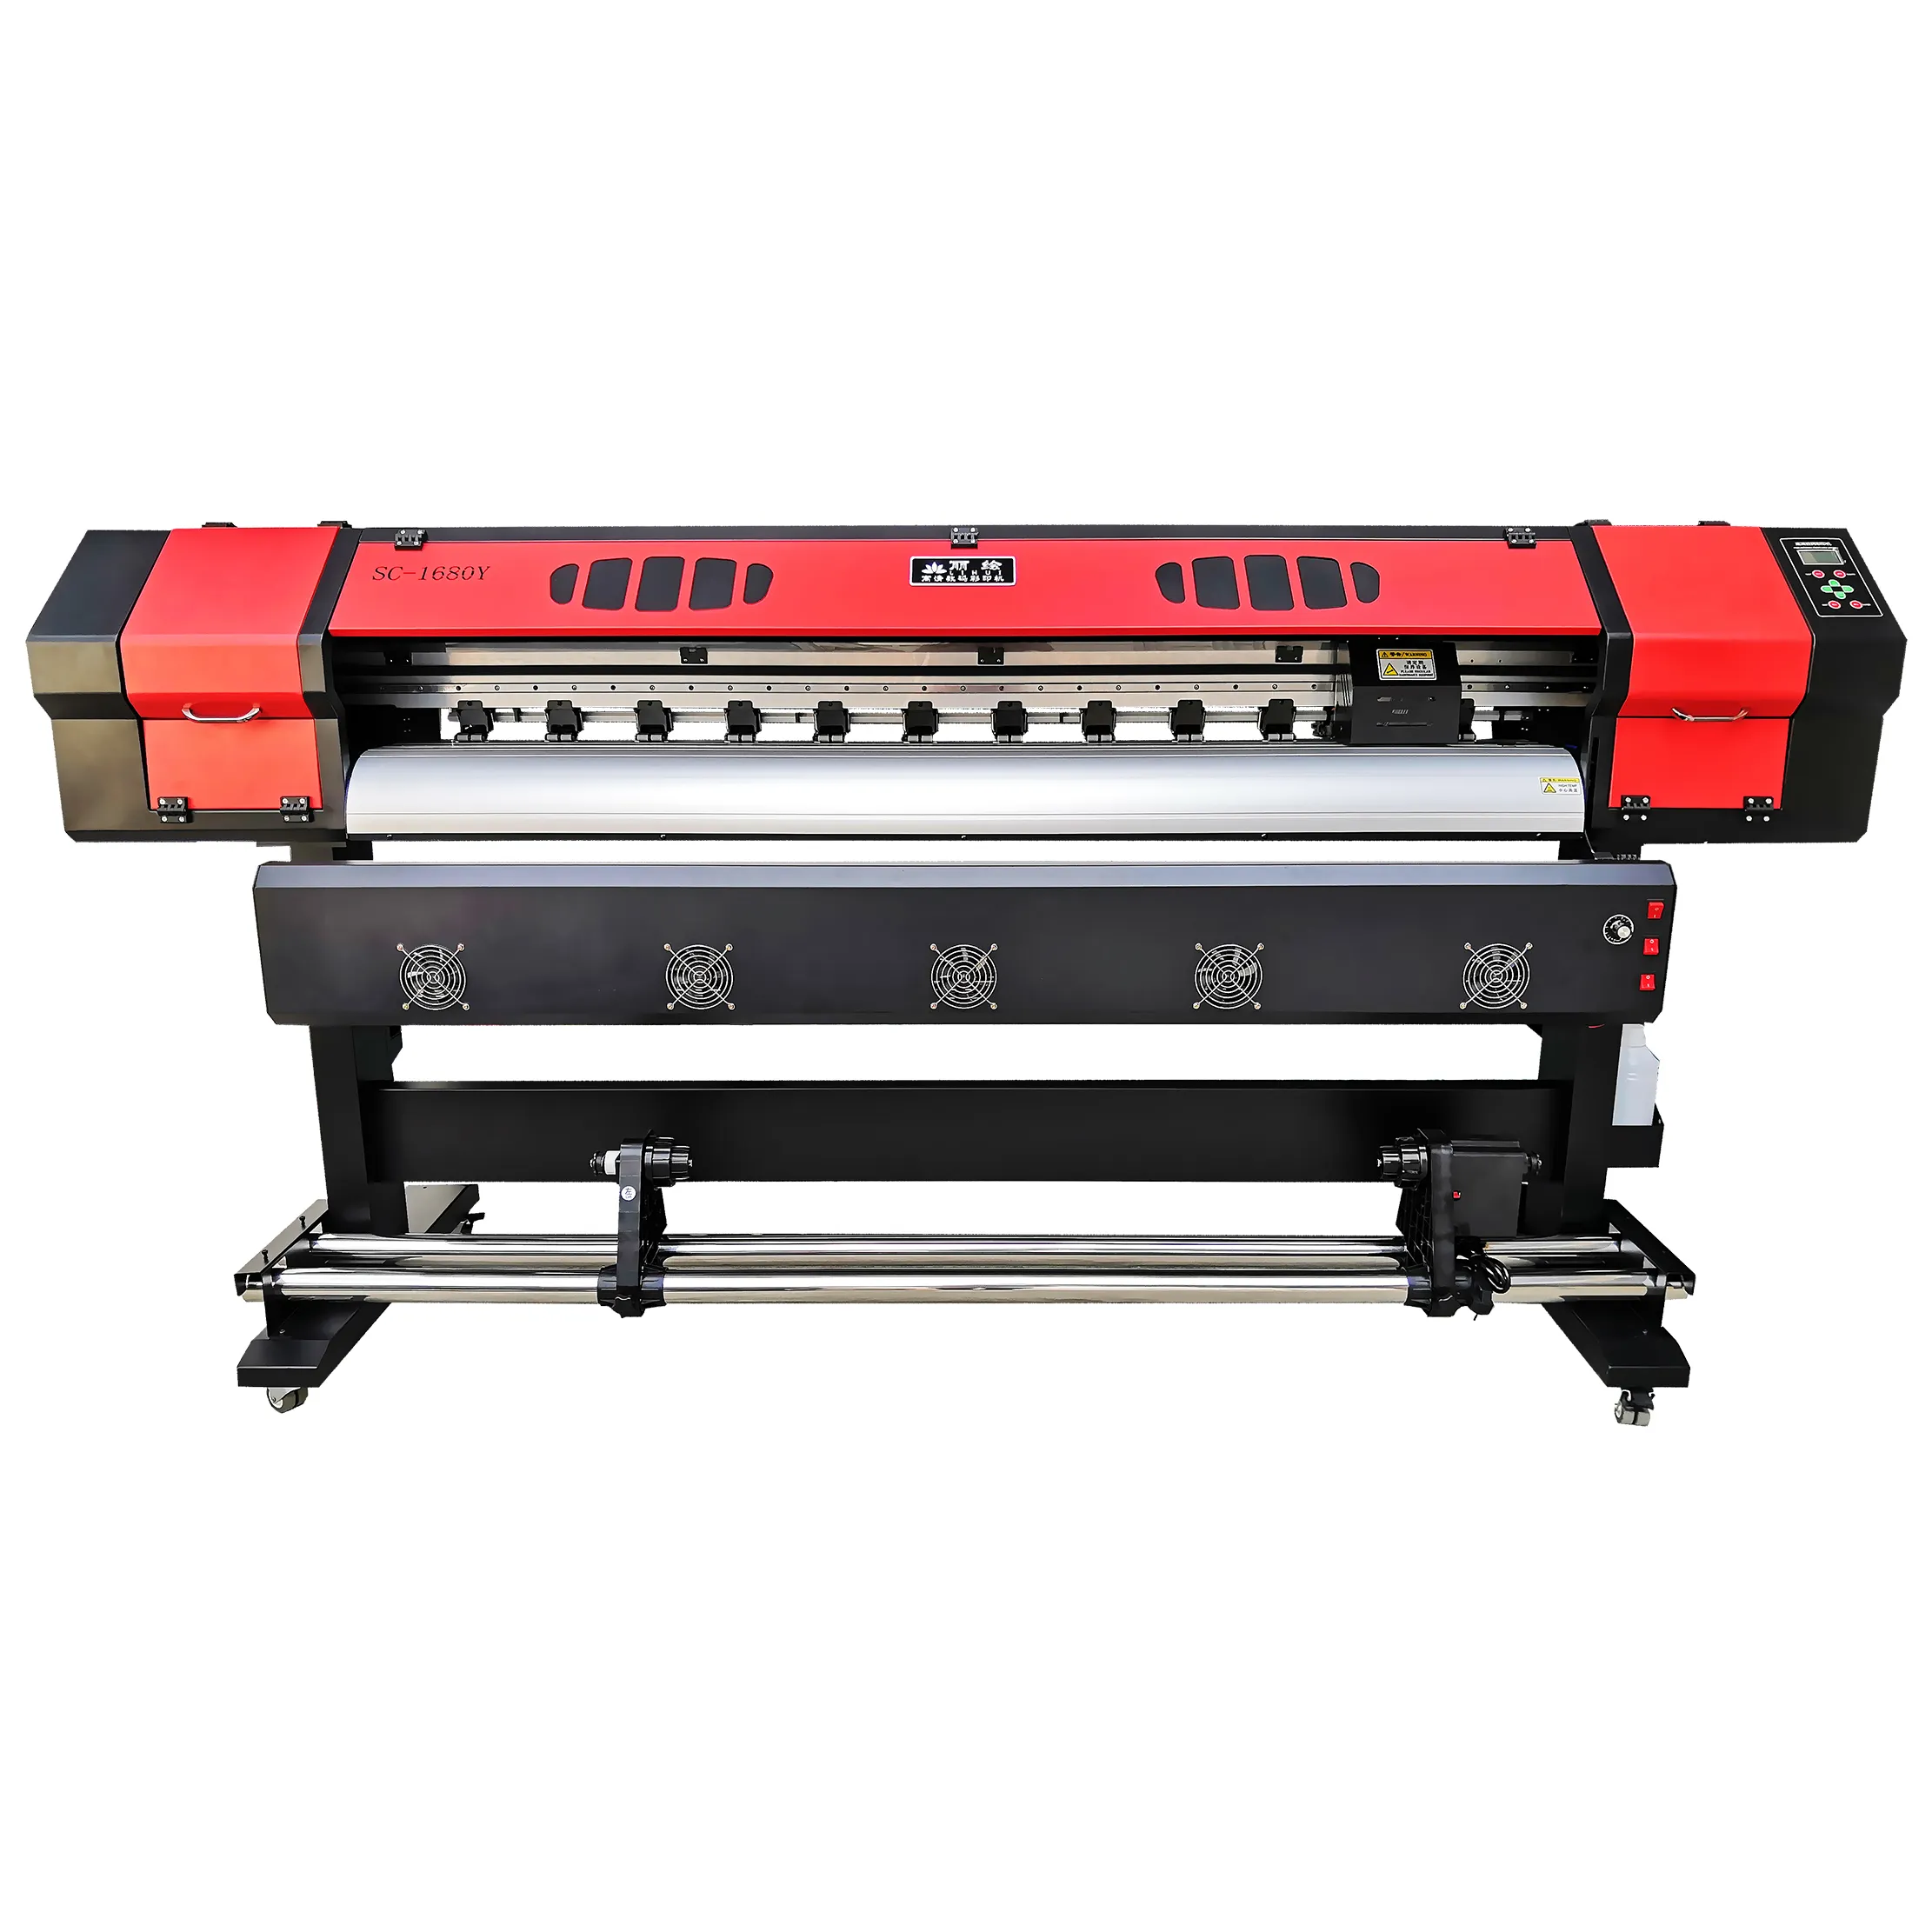 SC-1680Y stampante a getto d'inchiostro di colore rosso rotola per macchina doppia testina di stampa XP600 1.7m stampante UV eco solvente di grande formato